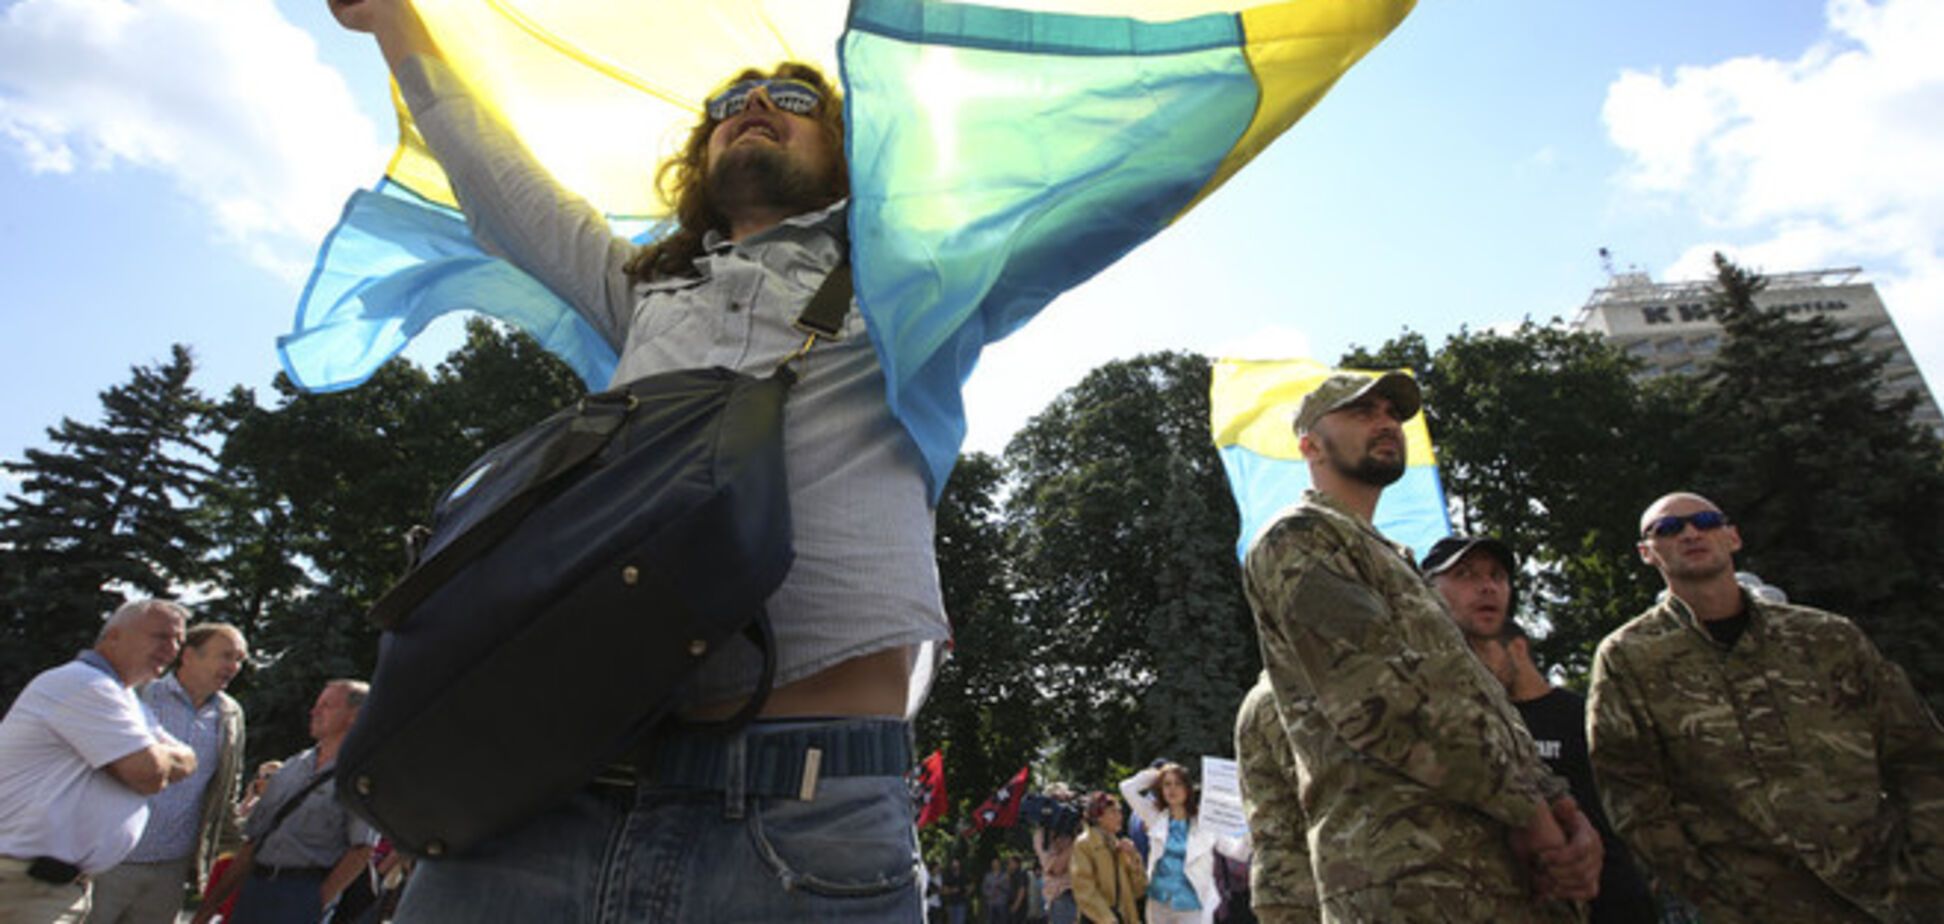 Сюмар закликала бойкотувати прокремлівські українські ЗМІ: іншого виходу немає